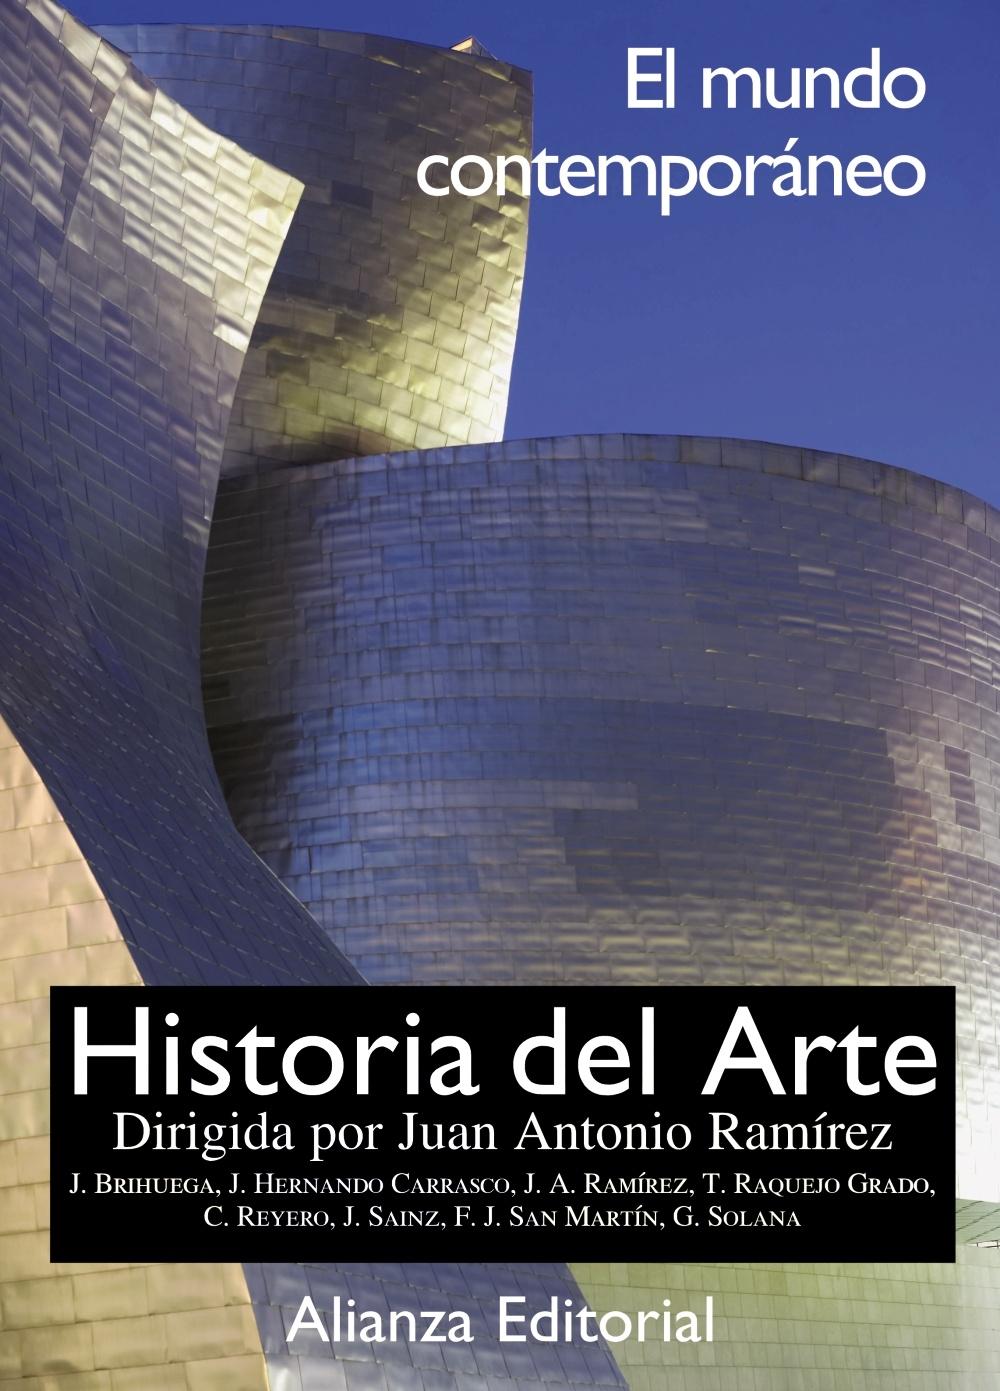 HISTORIA DEL ARTE  tomo 4 "El mundo Contemporaneo "